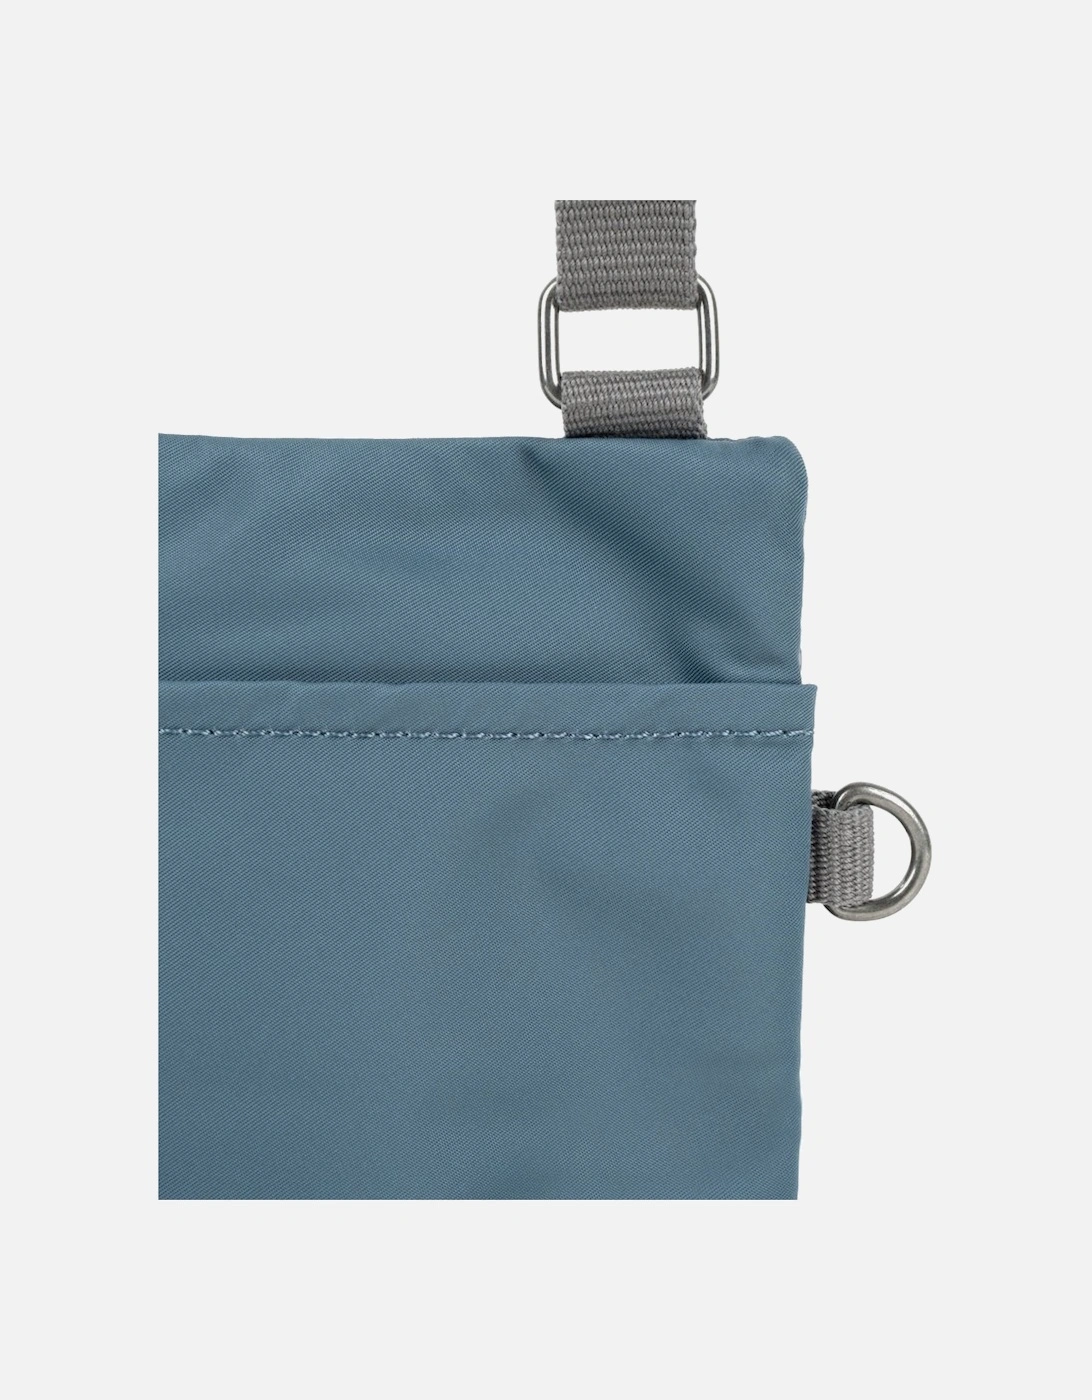 Chelsea Pocket X Bag